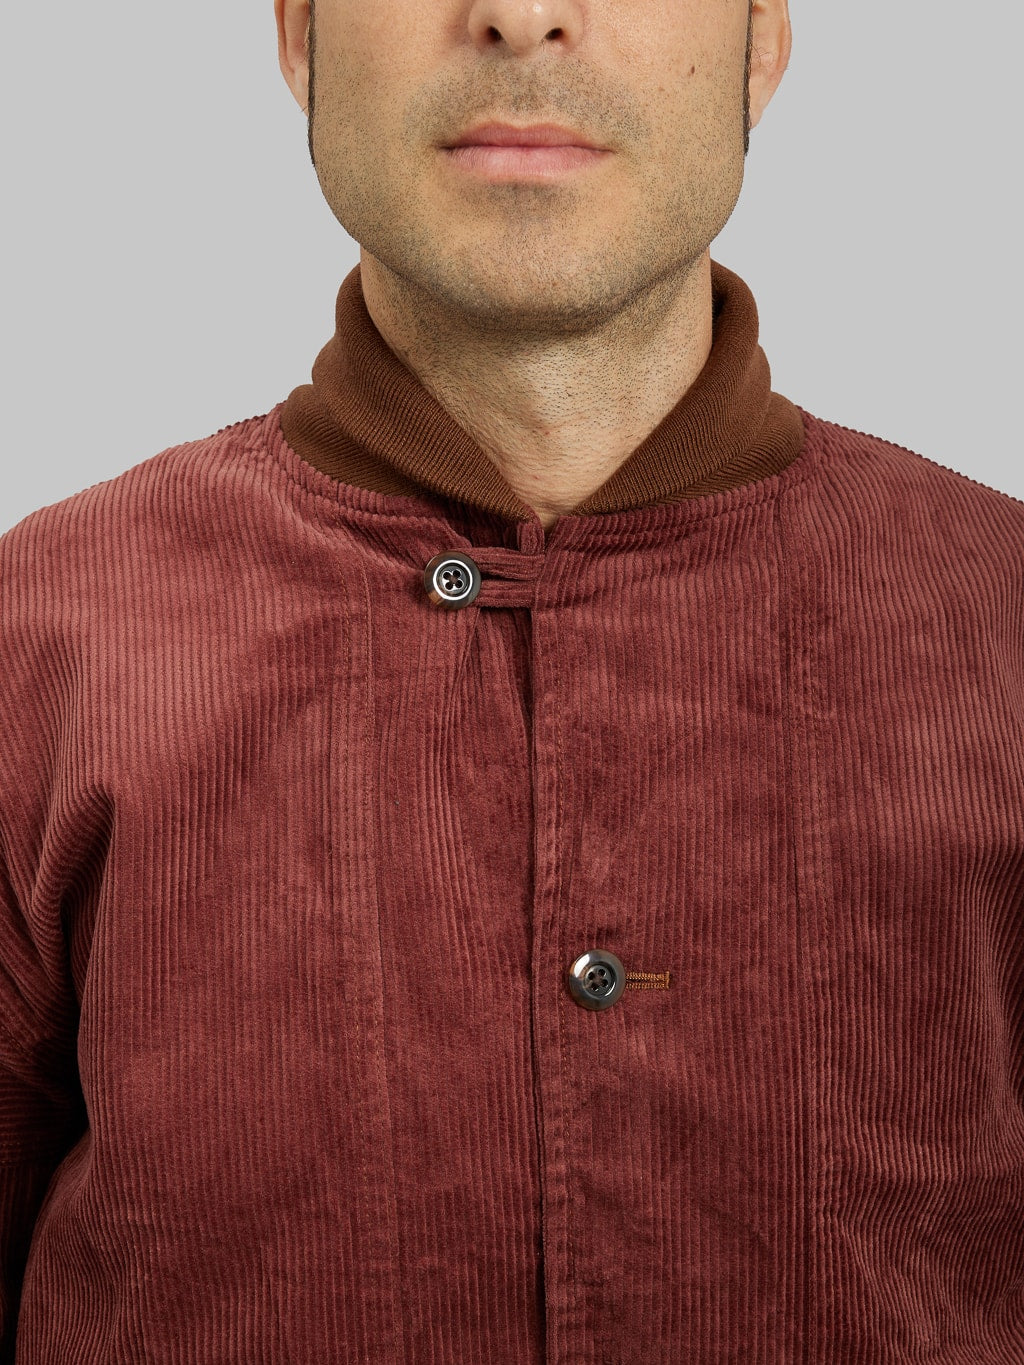 Tanuki Sazanami Corduro mud Dyed brown Jacket buttoned collar